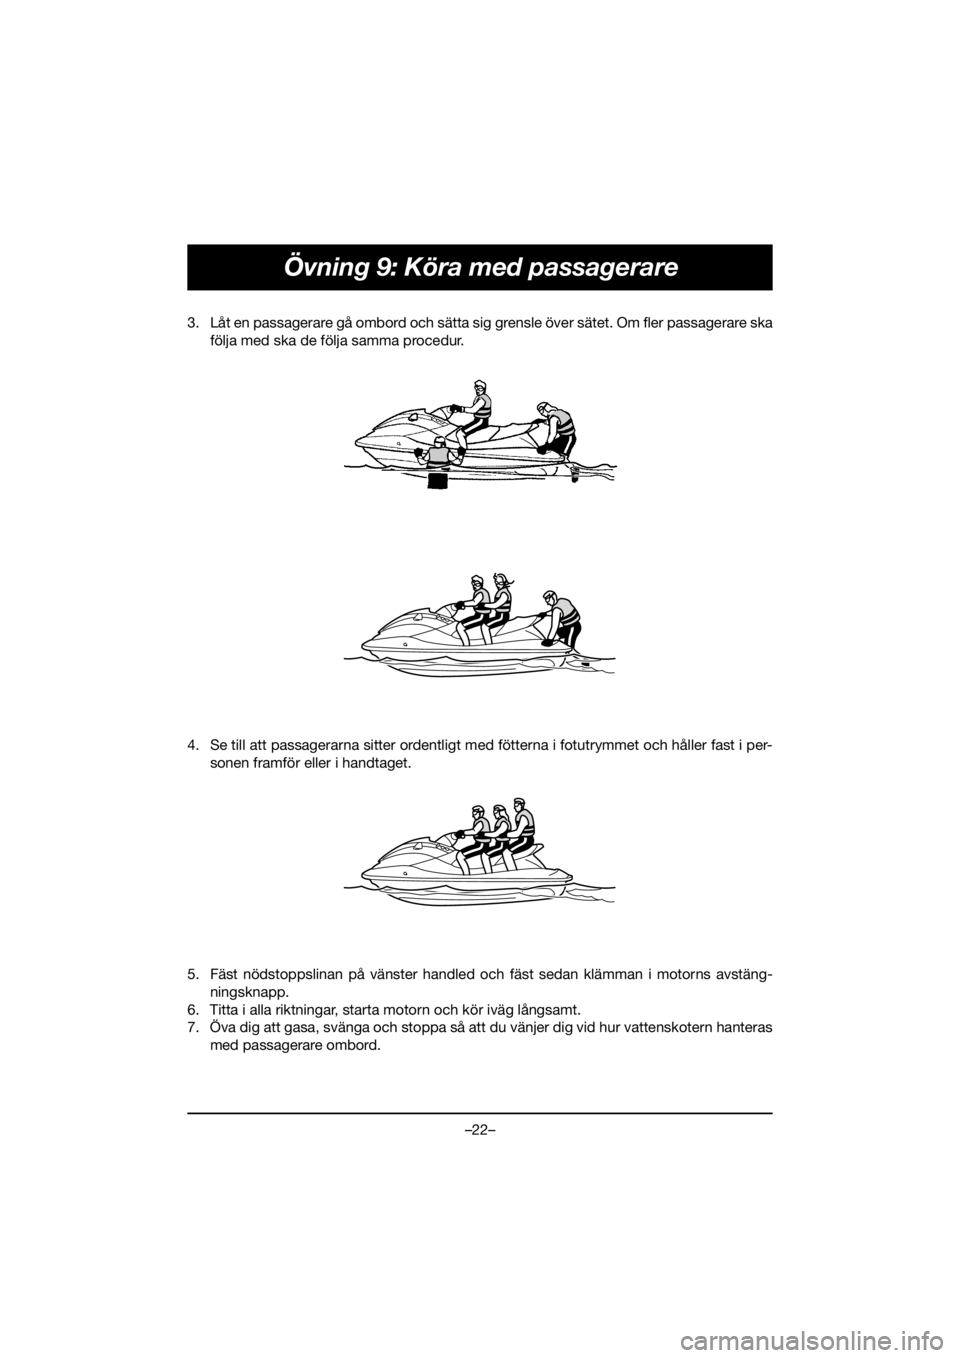 YAMAHA GP1800R SVHO 2020  Manual de utilização (in Portuguese) –22–
Övning 9: Köra med passagerare
3. Låt en passagerare gå ombord och sätta sig grensle över sätet. Om fler passagerare ska
följa med ska de följa samma procedur. 
4. Se till att passag